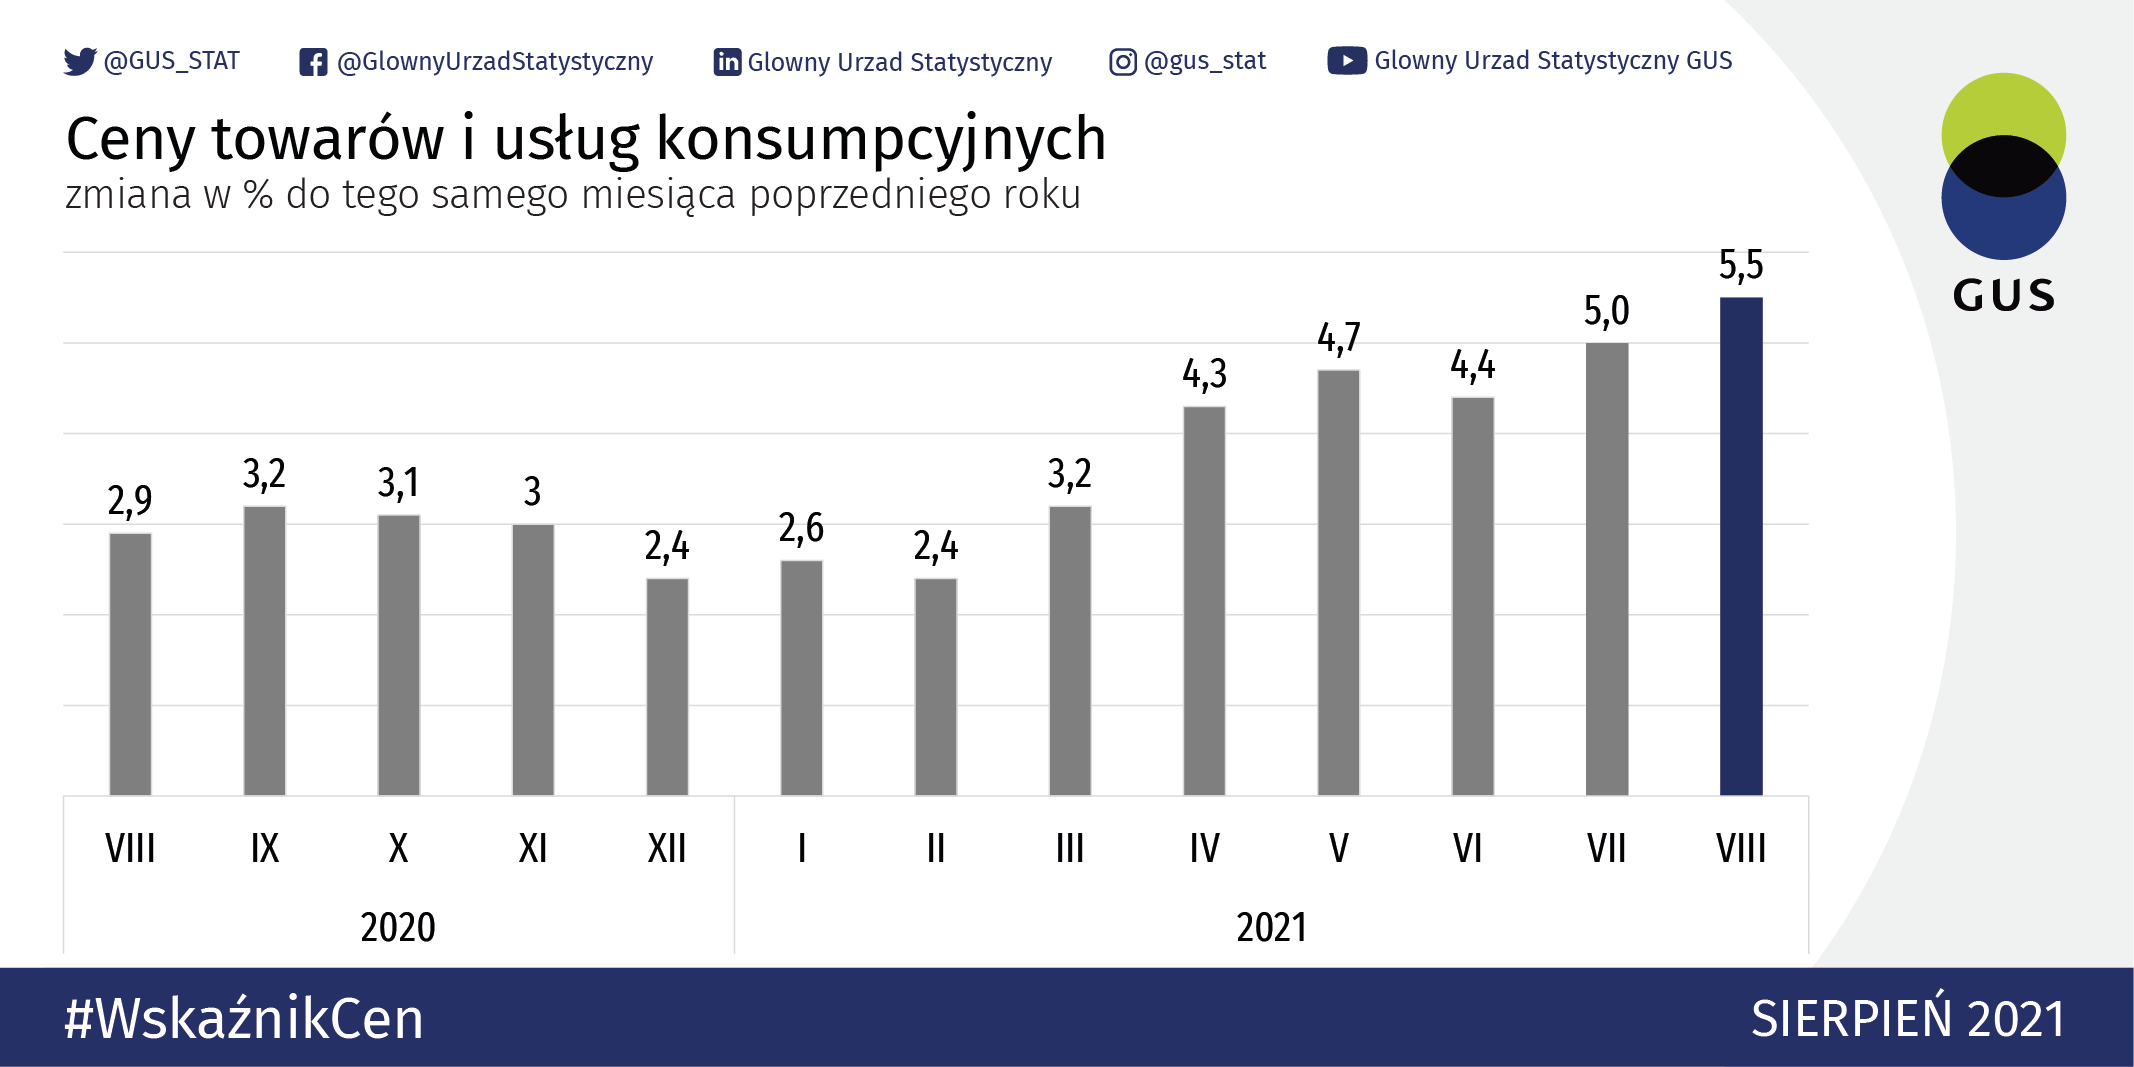 Wzrosły ceny usług i towarów w Polsce. Główny Urząd Statystyczny podał o ile